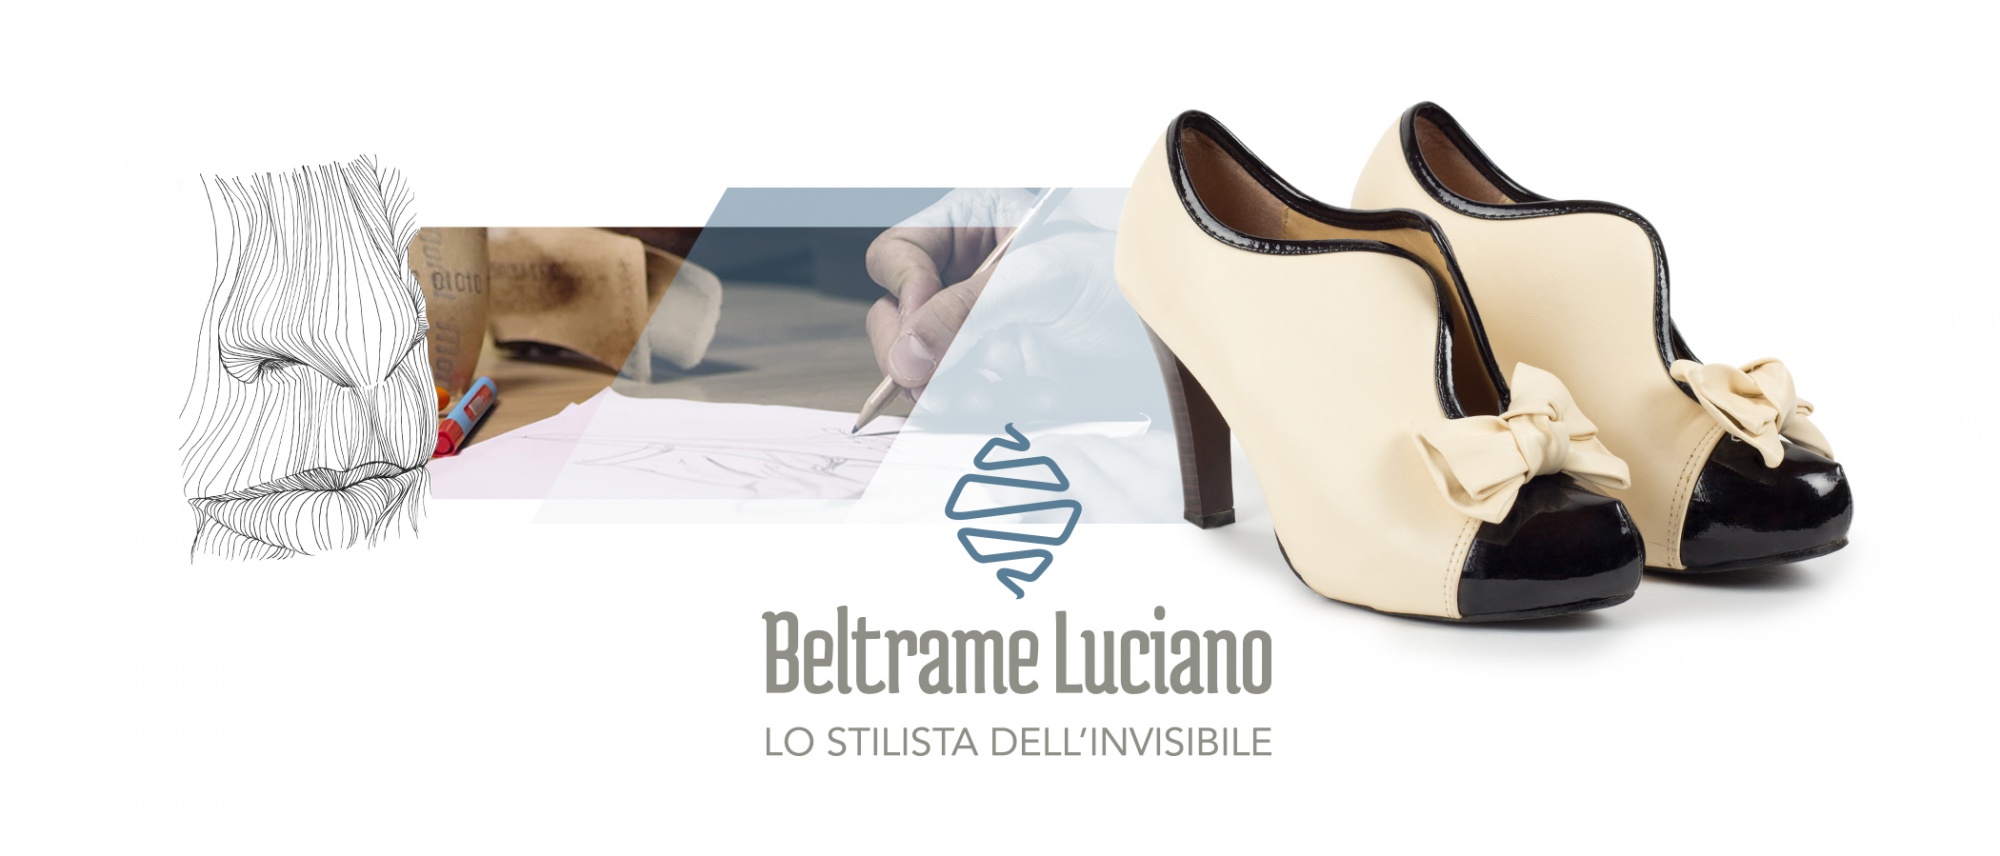 Tavola di stile per la creazione del marchio aziendale Beltrame Luciano